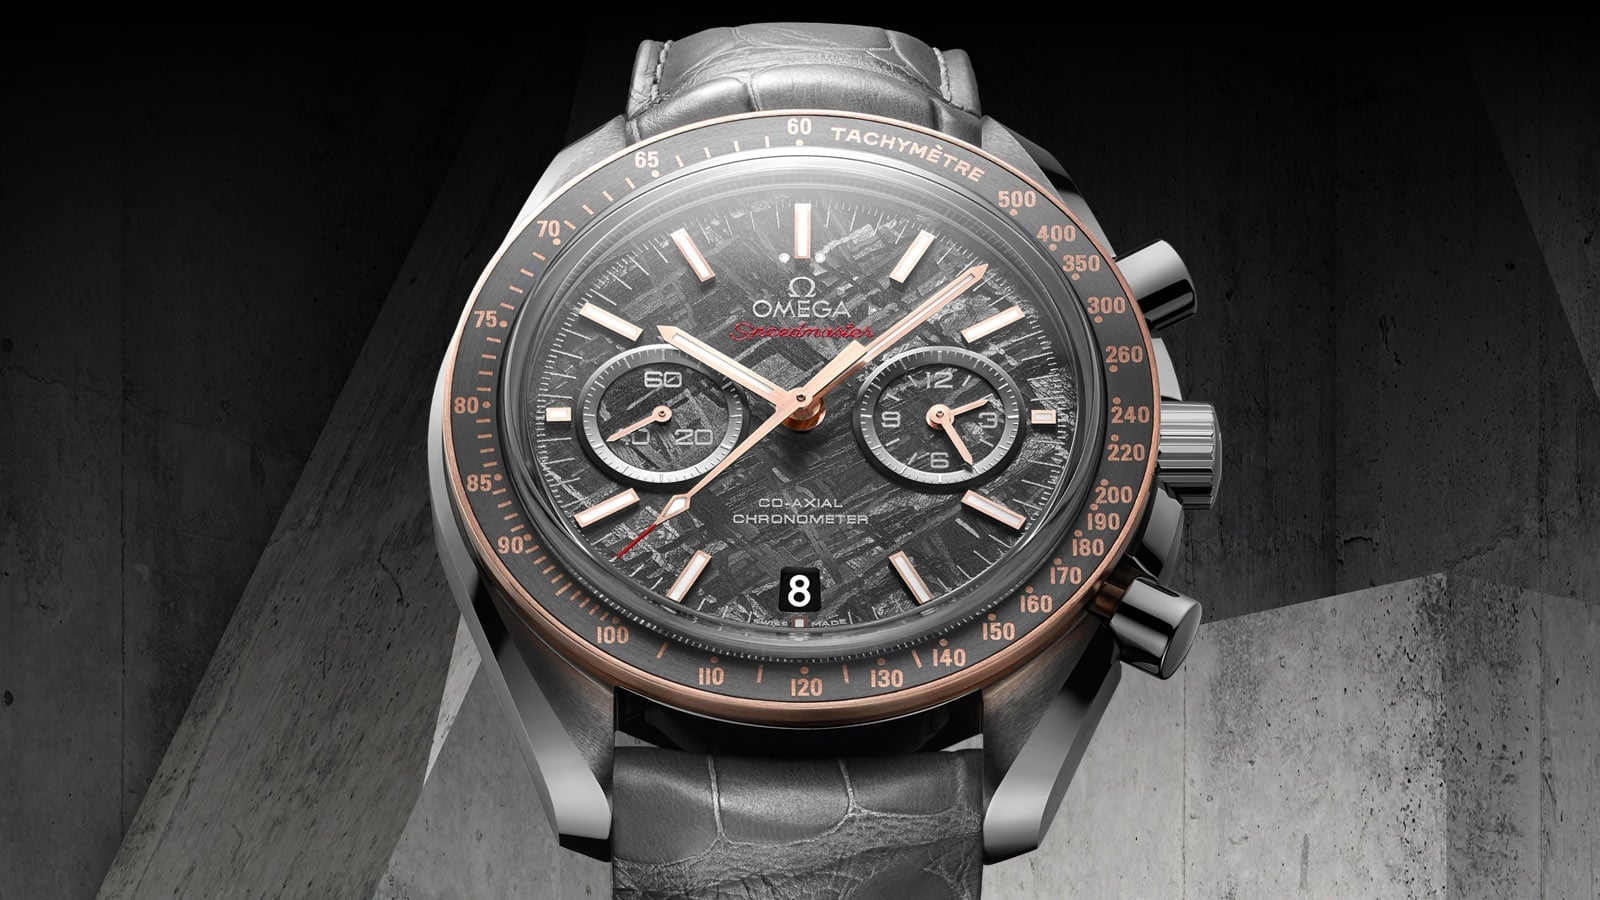 Porsche Design Watches Replica